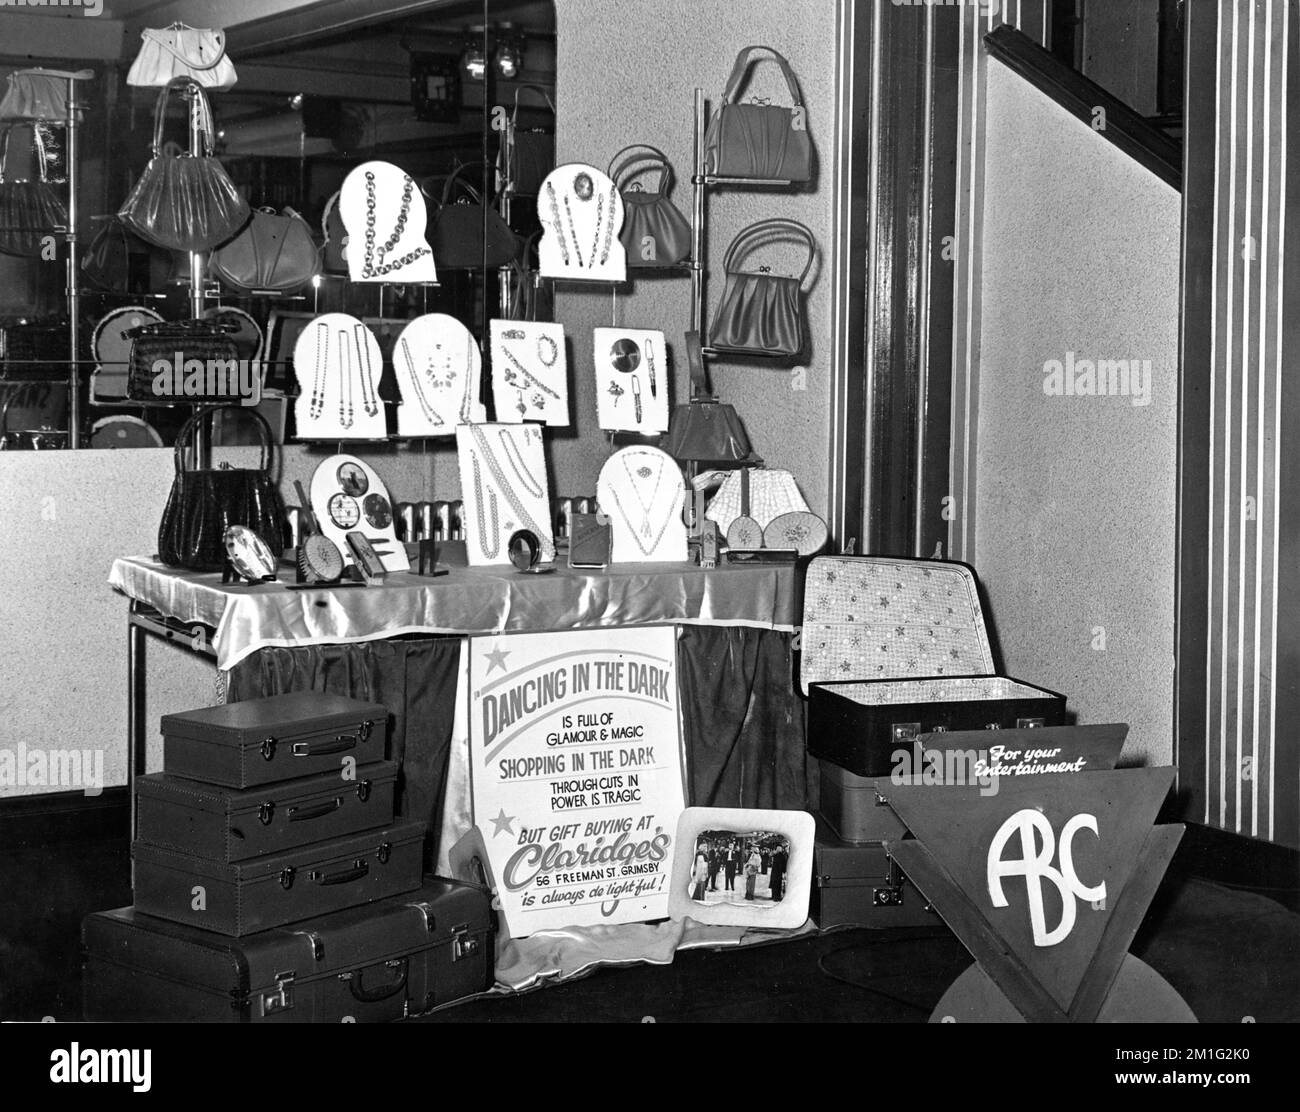 Negozio di articoli da regalo Claridge's Gift Shop a Grimsby per una mostra al Ritz - ABC Cinema a Cleethorpes, Lincolnshire, Inghilterra nel 1950 di WILLIAM POWELL MARK STEVENS e BETSY DRAKE in BALLO NEL BUIO 1949 regista Irving Reis Twentieth Century Fox Foto Stock